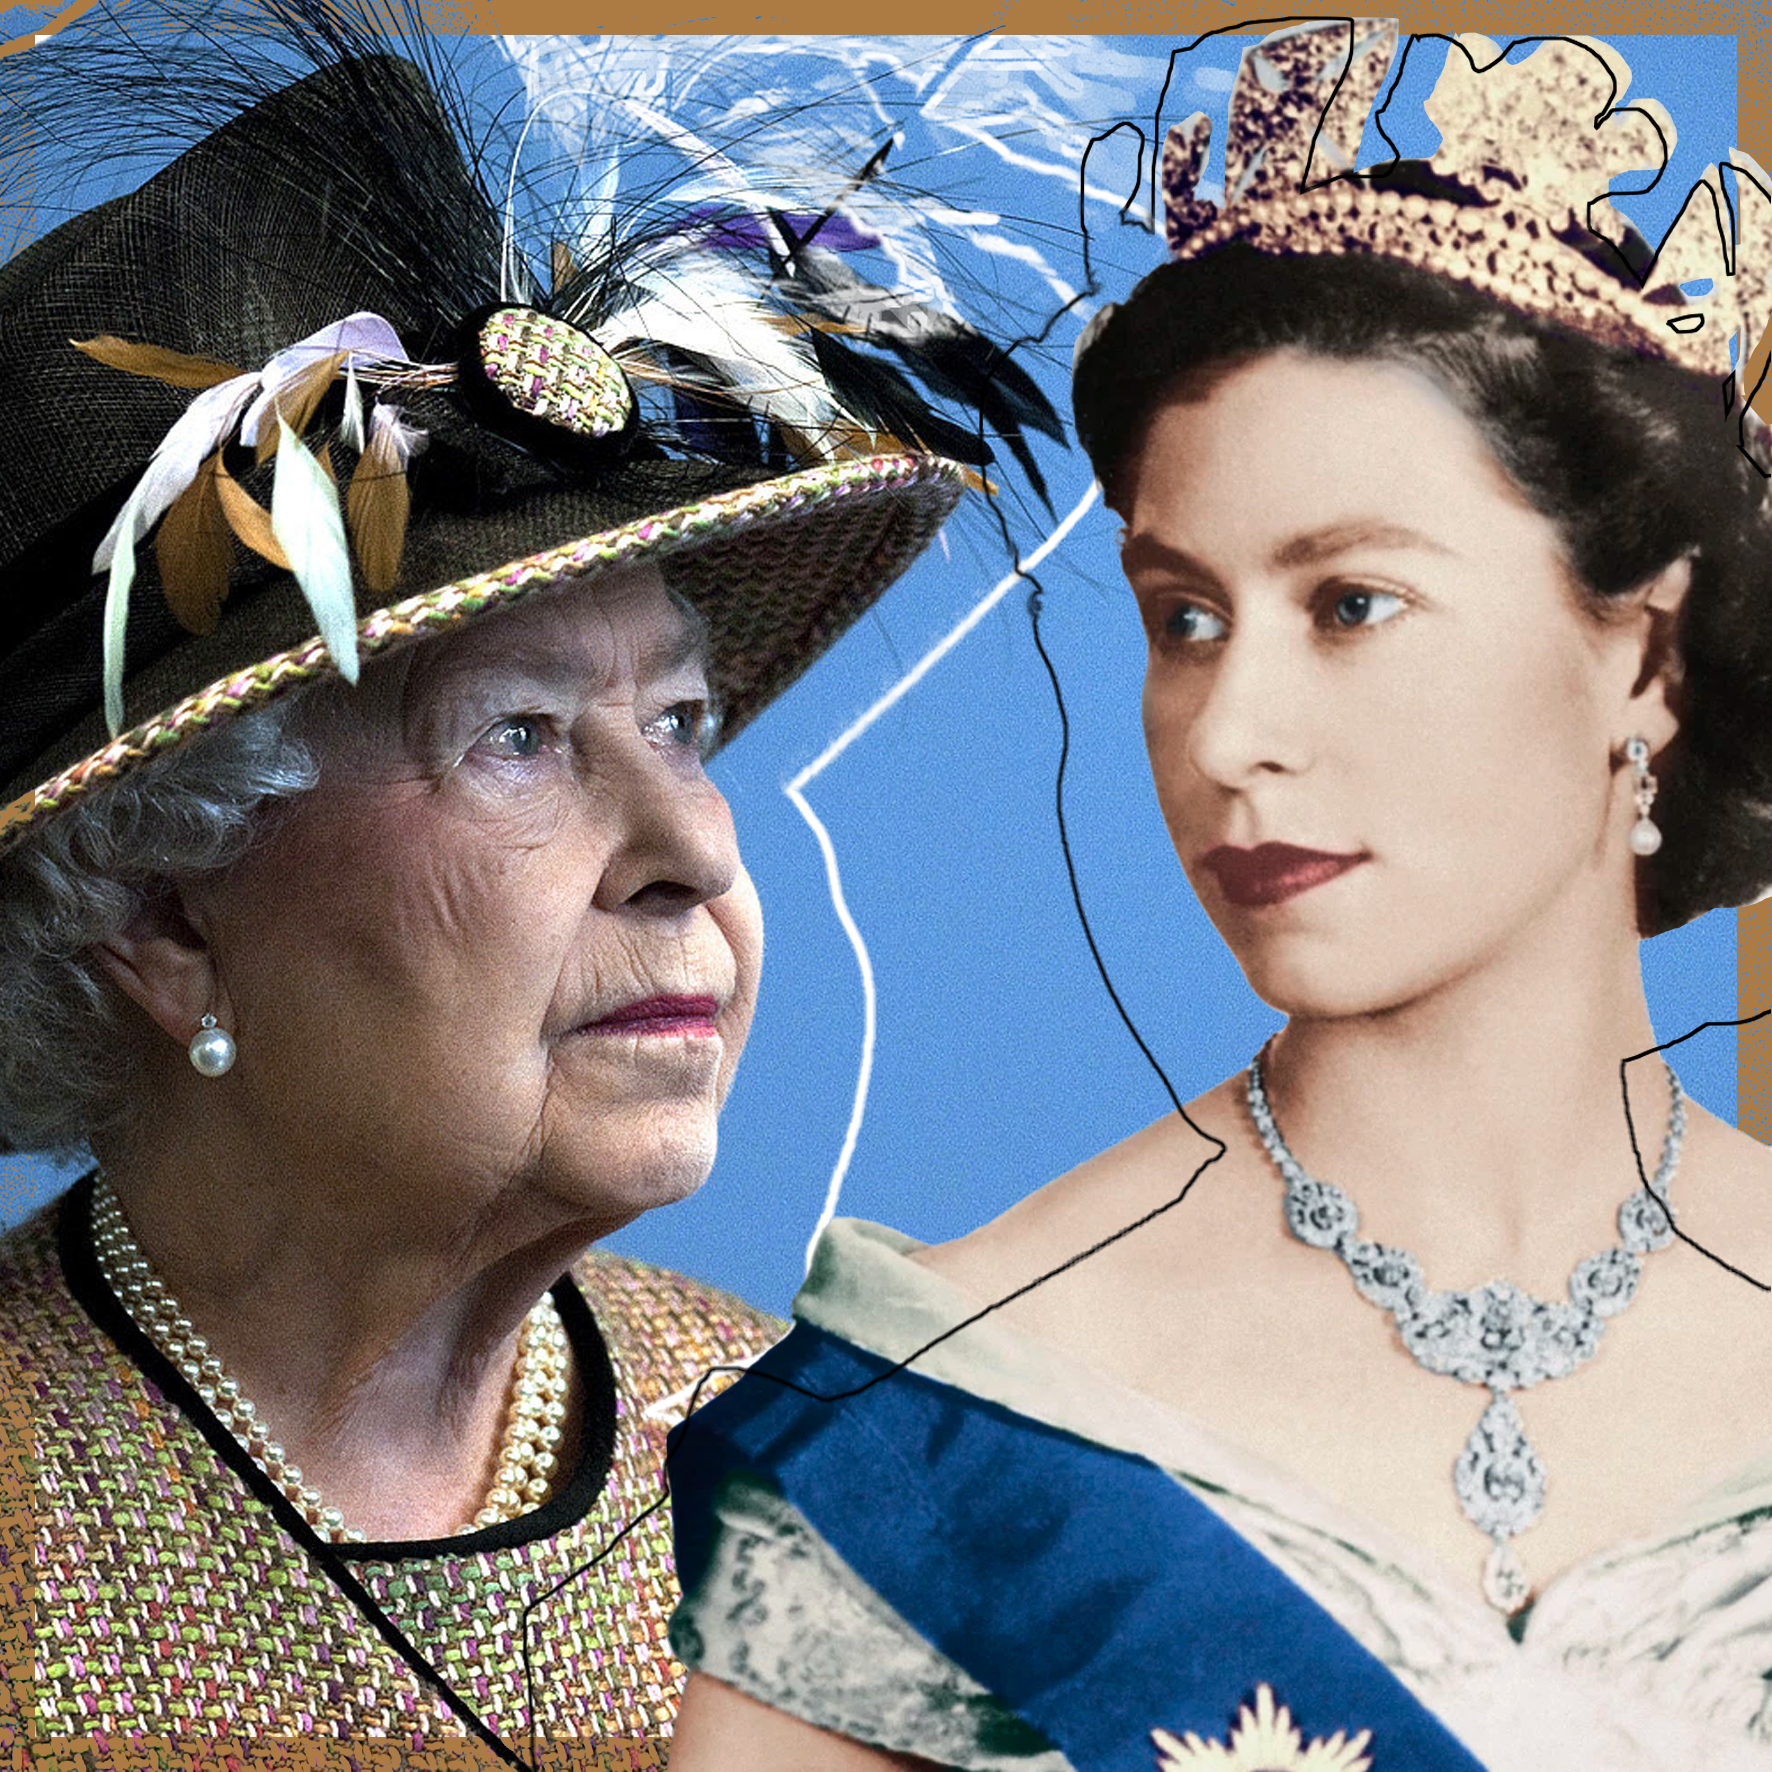 Πώς η Βασίλισσα Ελισάβετ επηρέασε τον τρόπο που βλέπουμε τις γυναίκες στην εξουσία